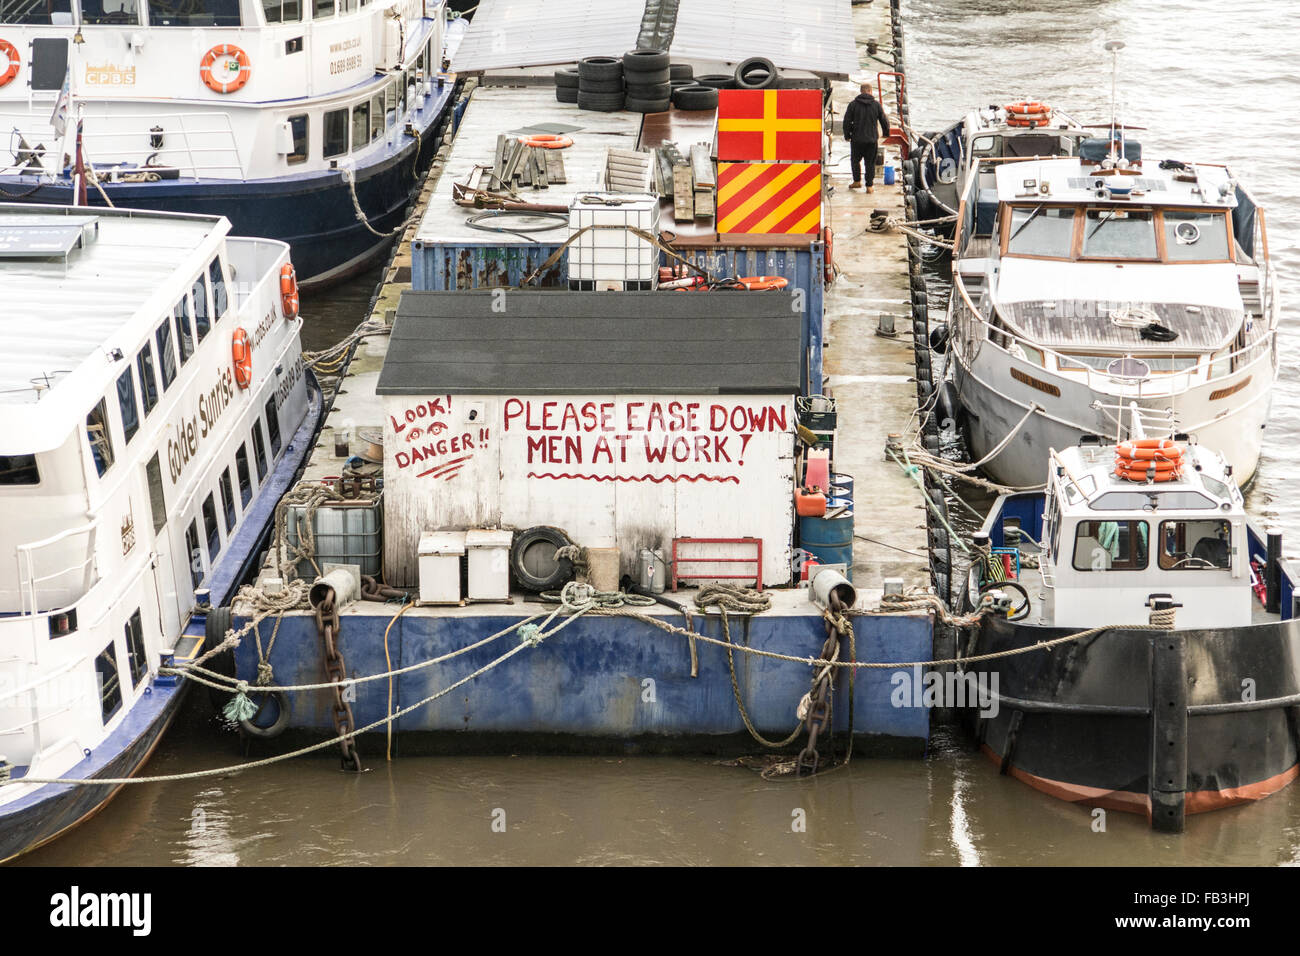 Londres, Angleterre, Royaume-Uni. Avis sur une barge dans la Tamise - Veuillez Facilité vers le bas - l'homme au travail Banque D'Images